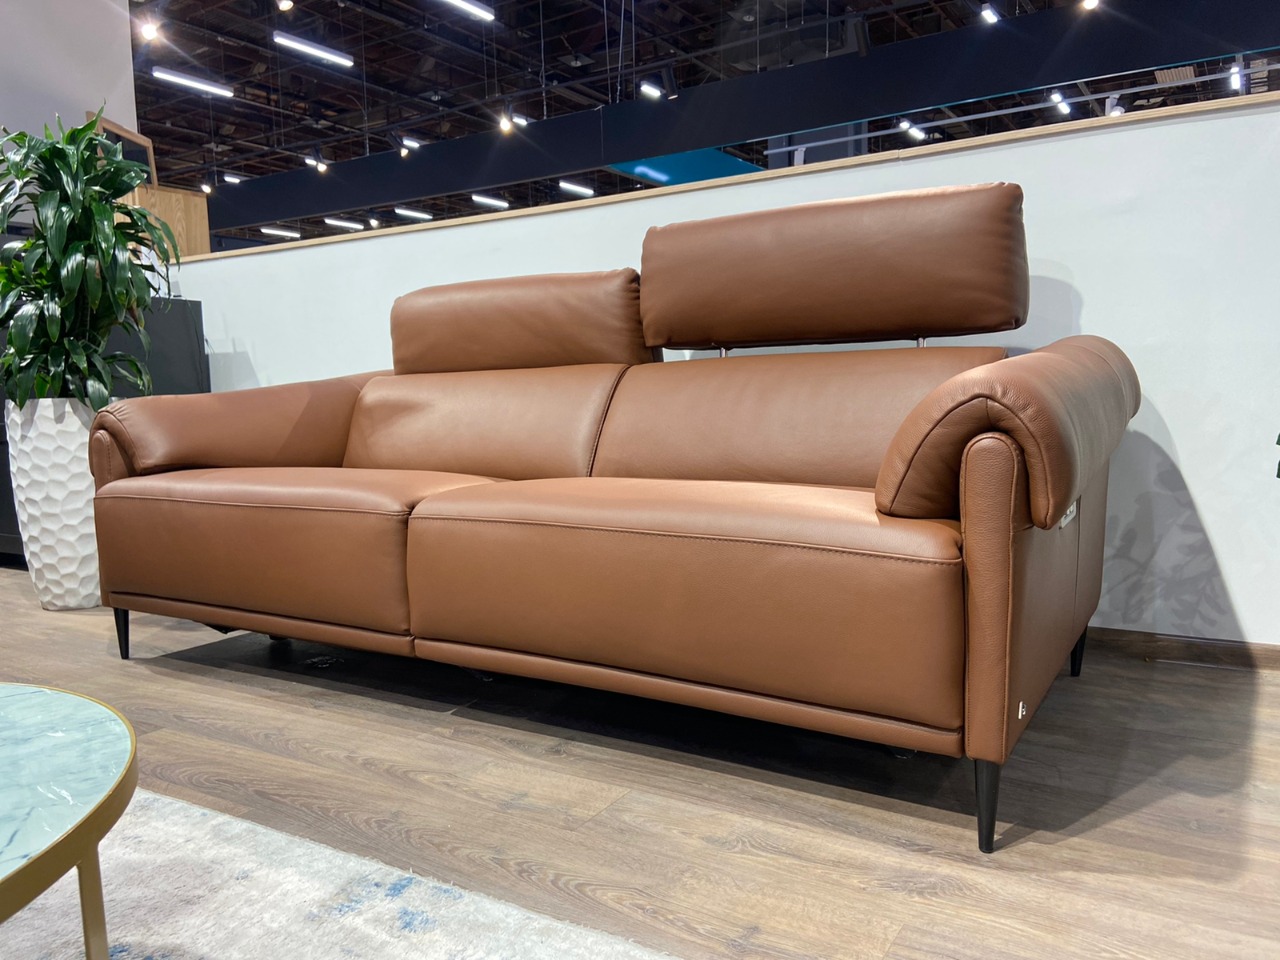 Итальянский диван от NICOLETTIHOME BRAMBLE с двумя реклайнерами — ₽, купить у официального дилера Nicolettihome